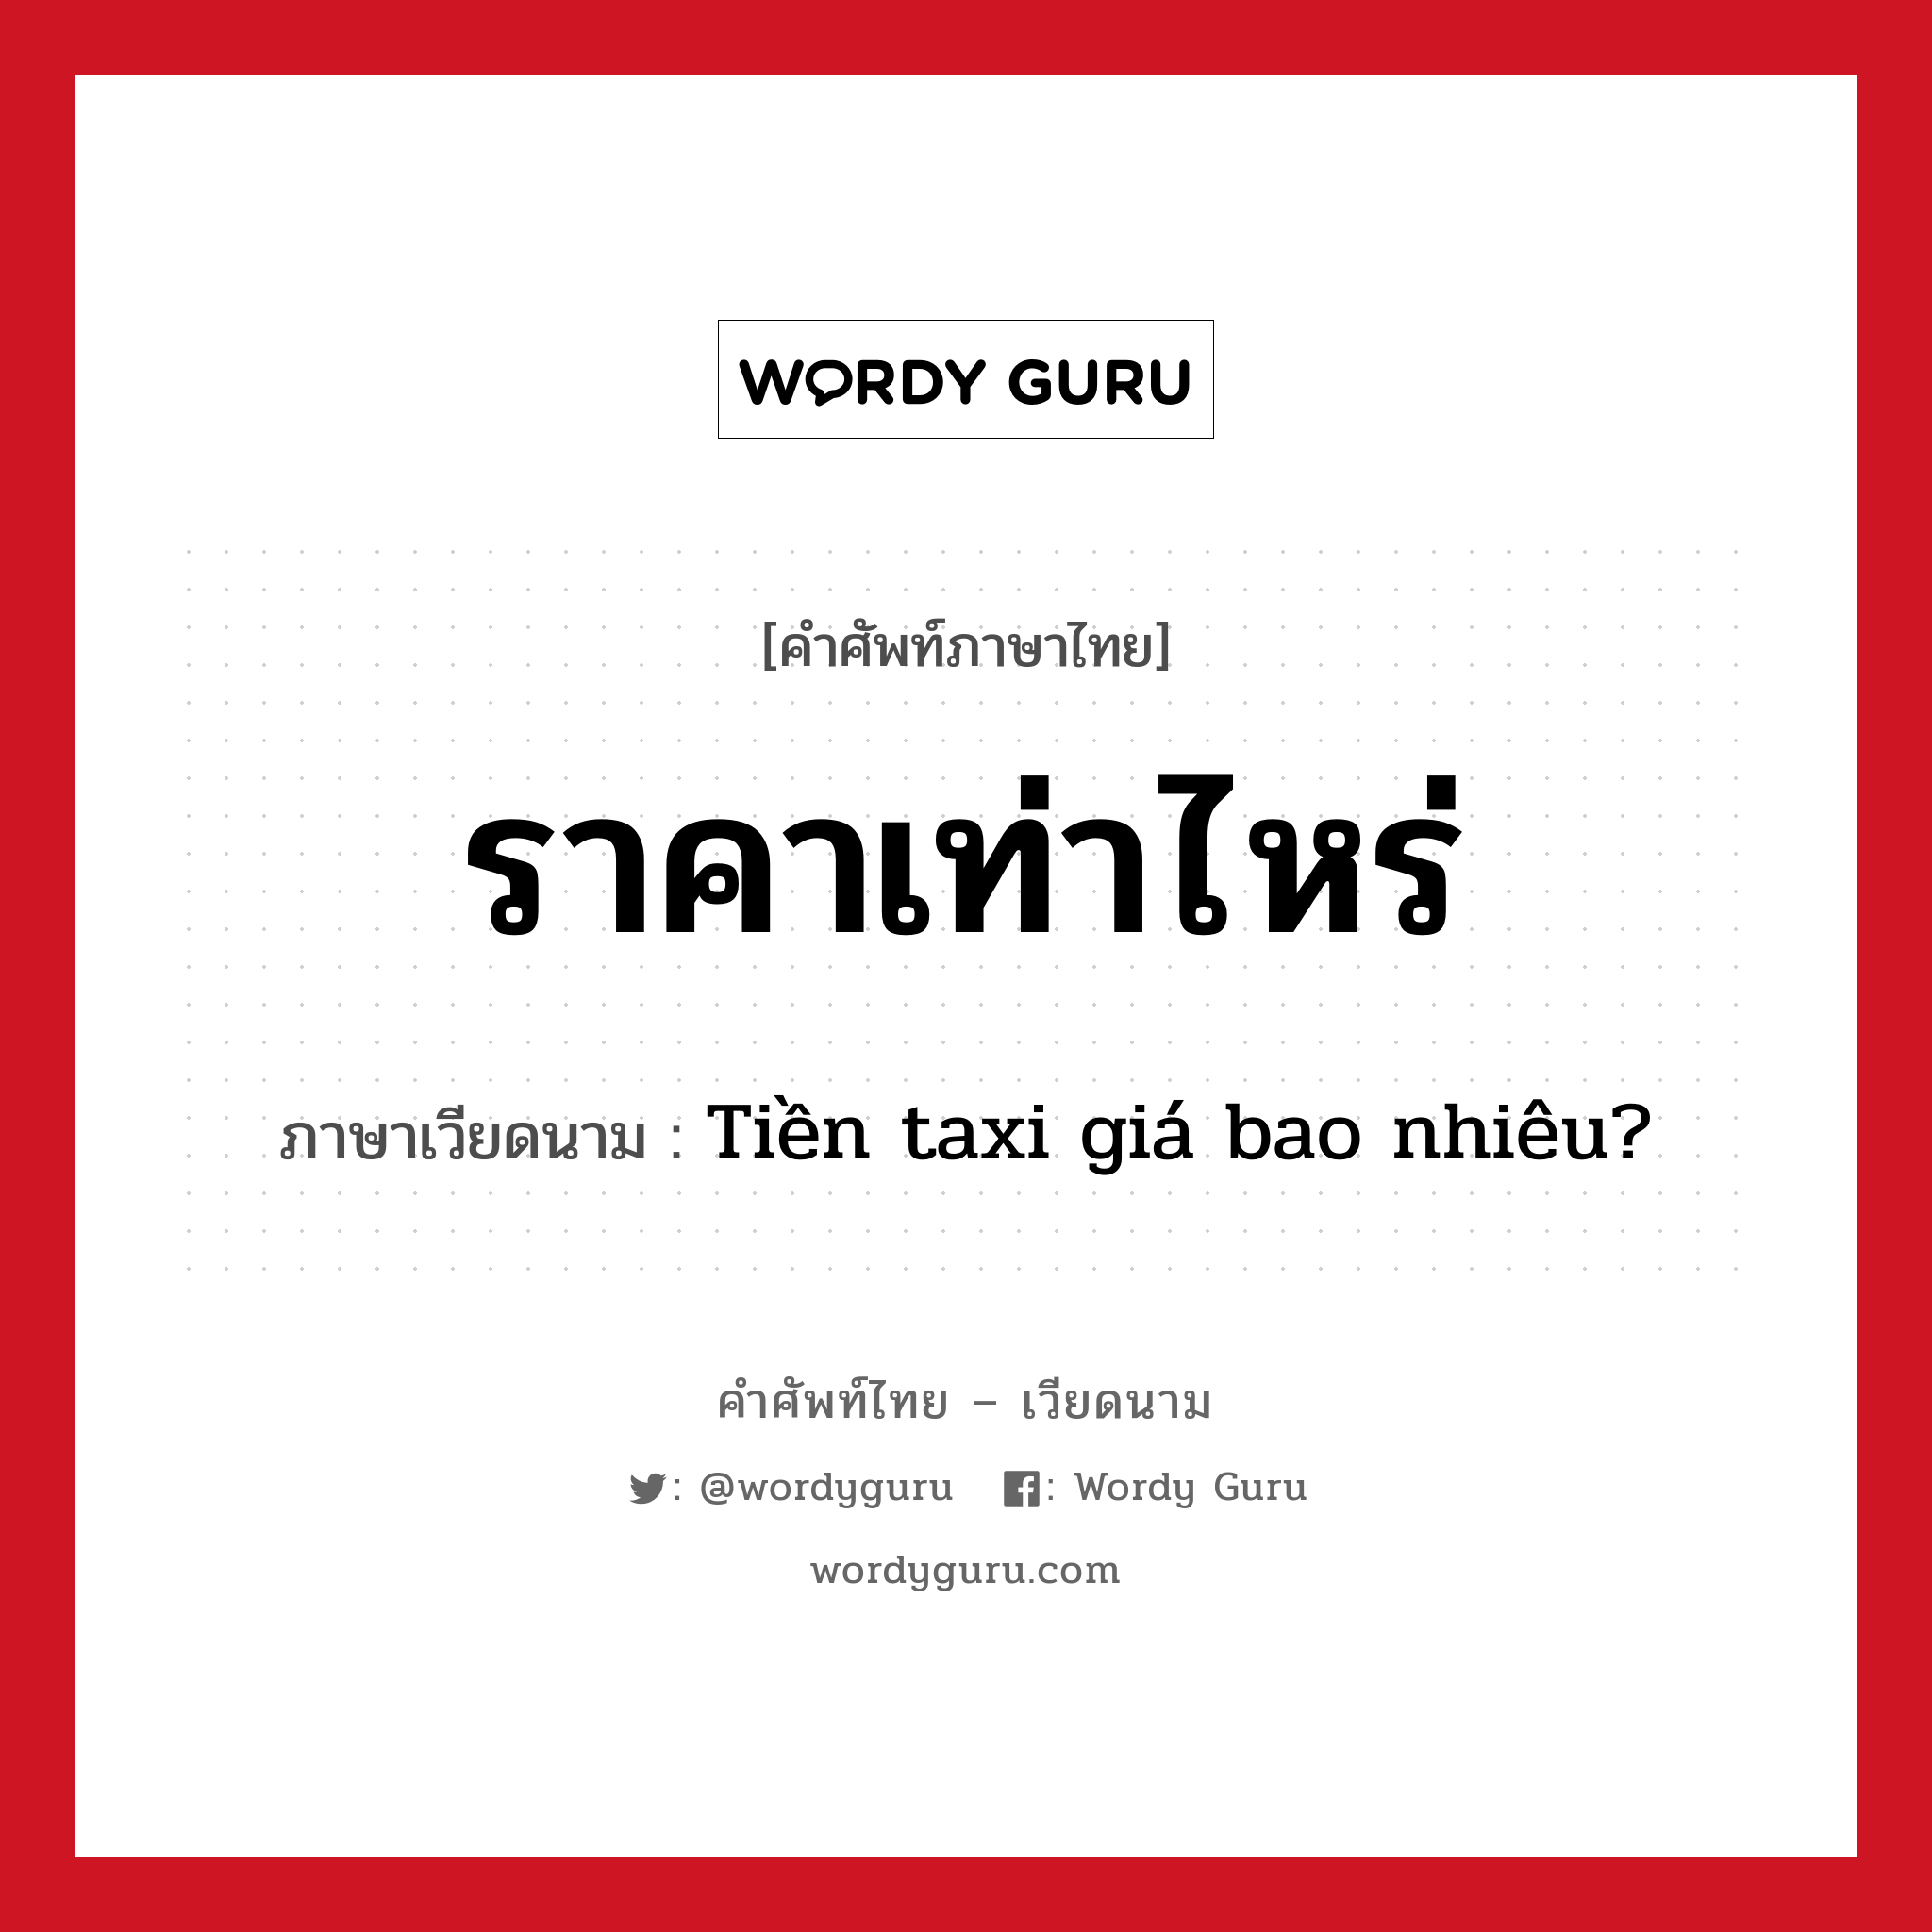 ราคาเท่าไหร่ ภาษาเวียดนามคืออะไร, คำศัพท์ภาษาไทย - เวียดนาม ราคาเท่าไหร่ ภาษาเวียดนาม Tiền taxi giá bao nhiêu? หมวด การเดินทาง หมวด การเดินทาง